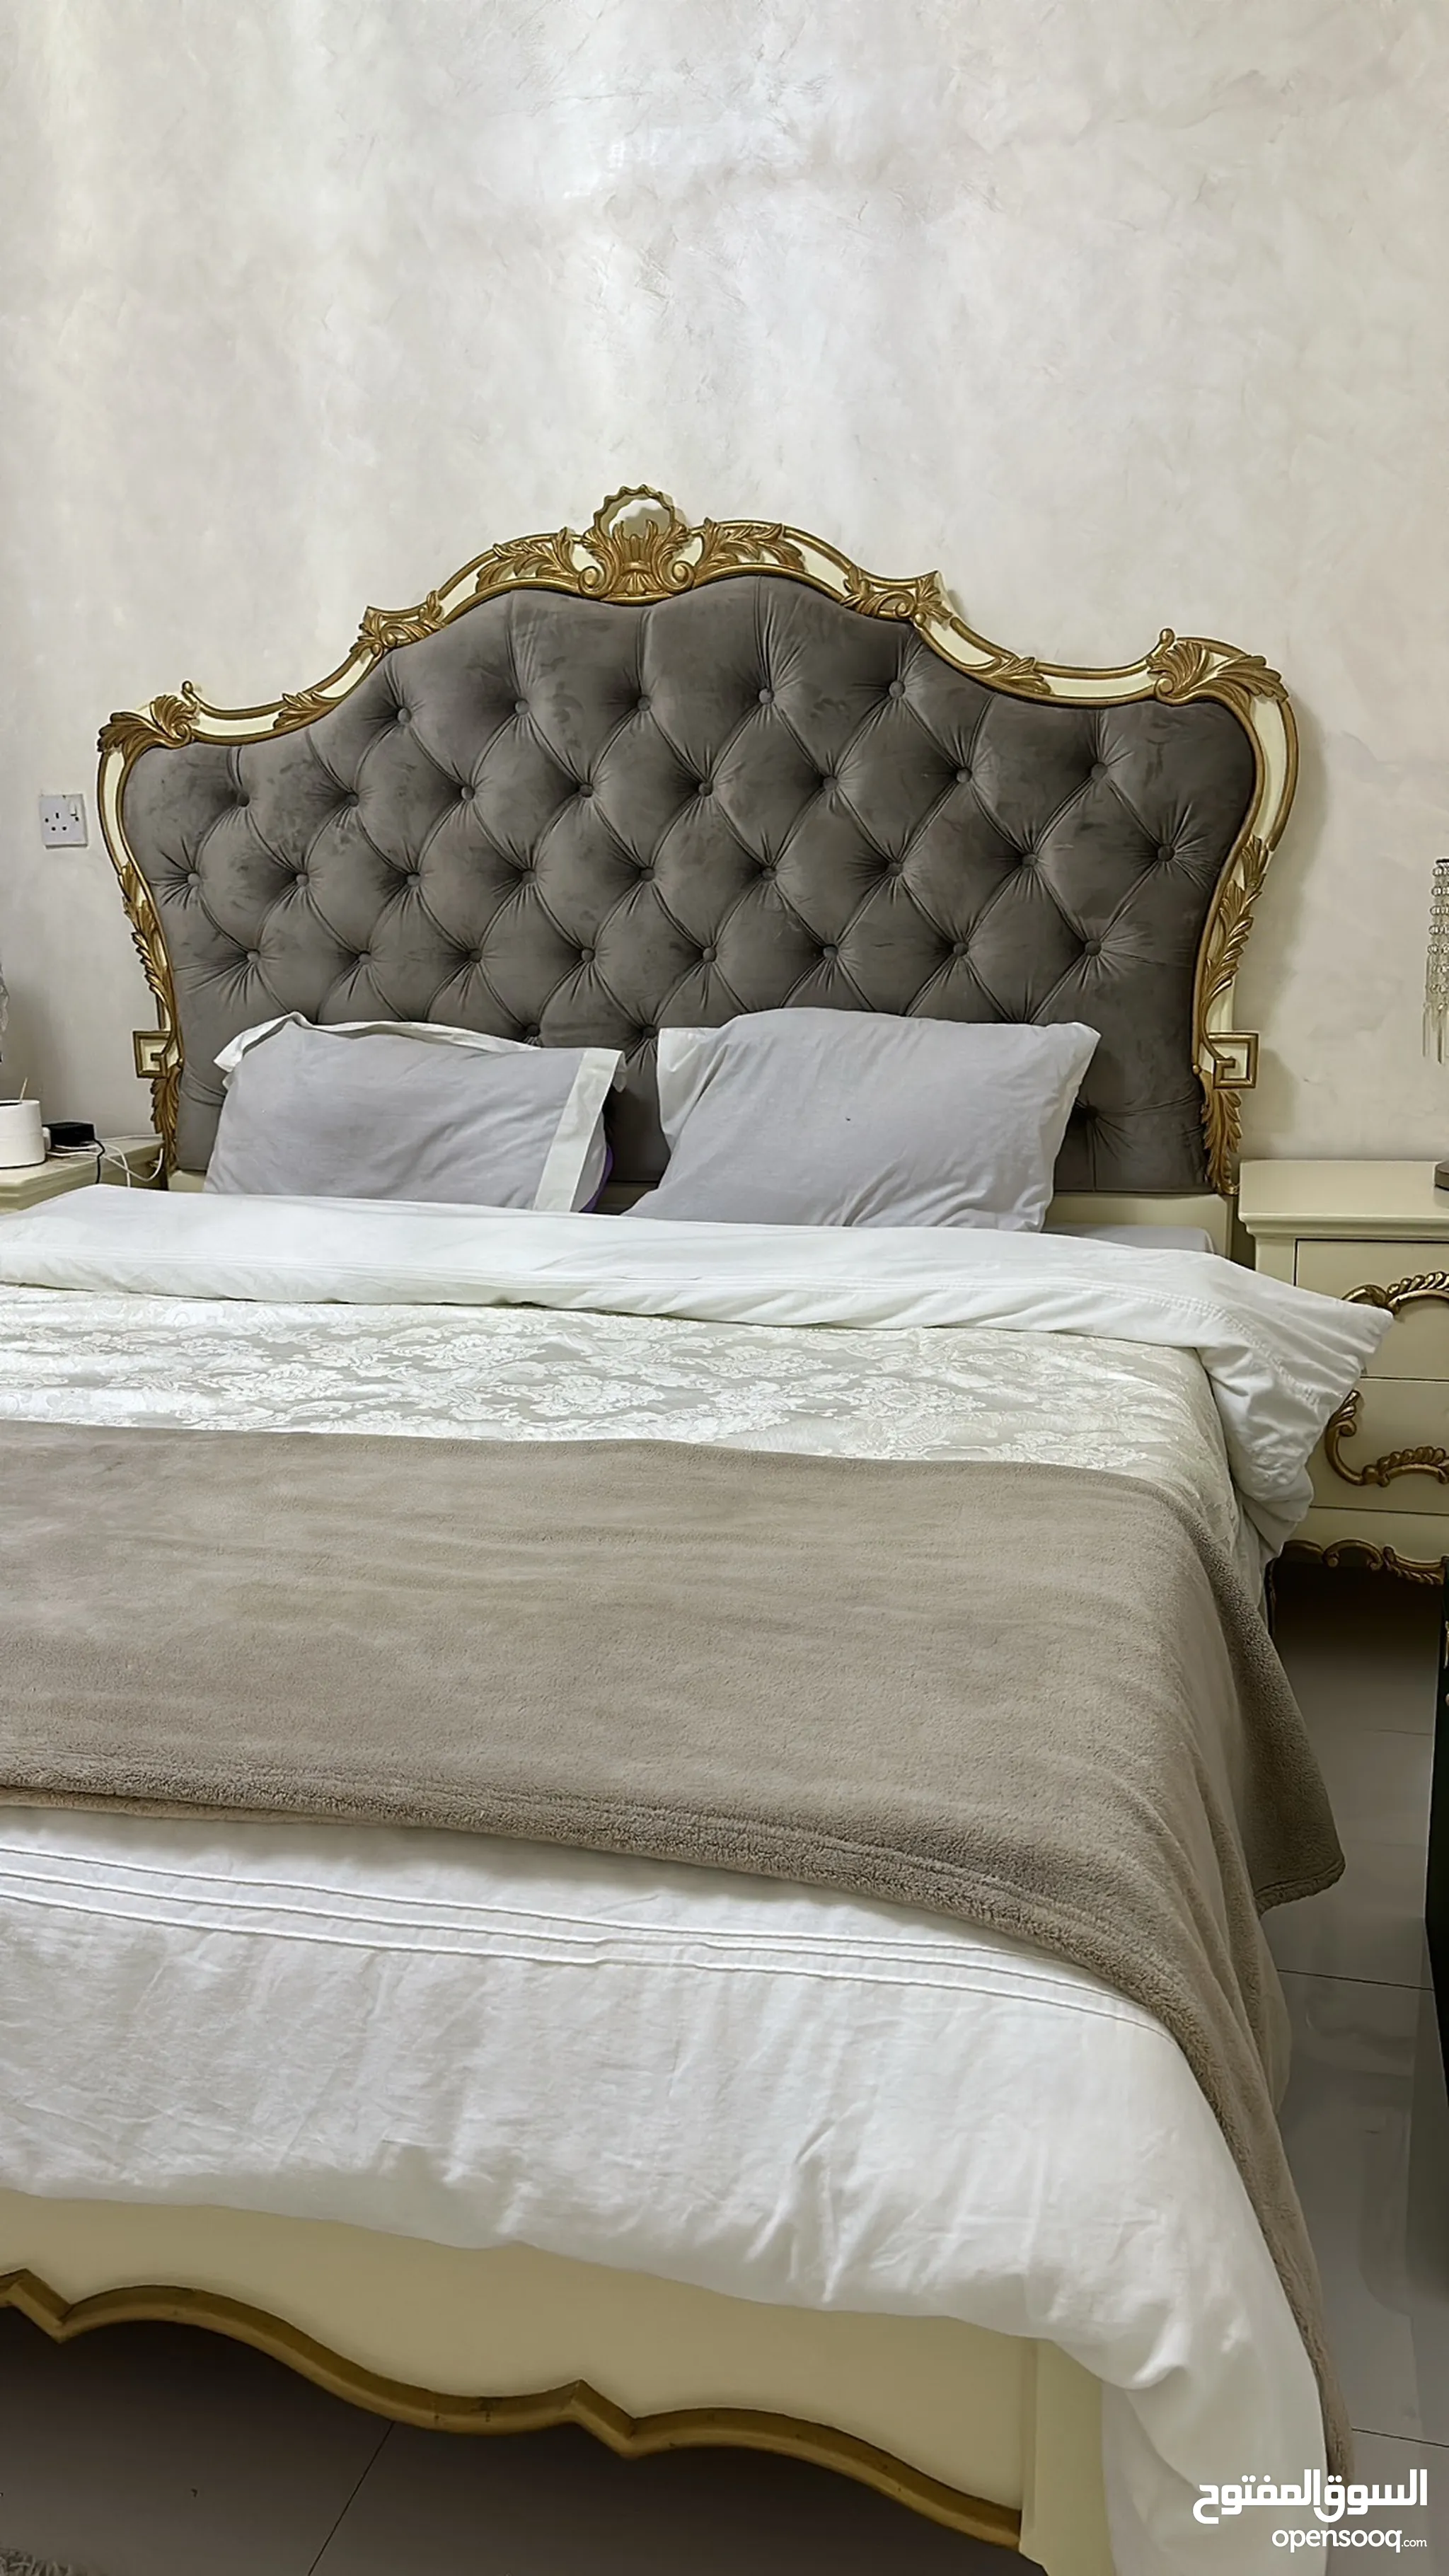 غرف نوم : سرير نوم للبيع : سرير دورين : سرير نفر ونص : سرير حديد وخشب :  ايكيا : ارخص الاسعار في أبو ظبي | السوق المفتوح